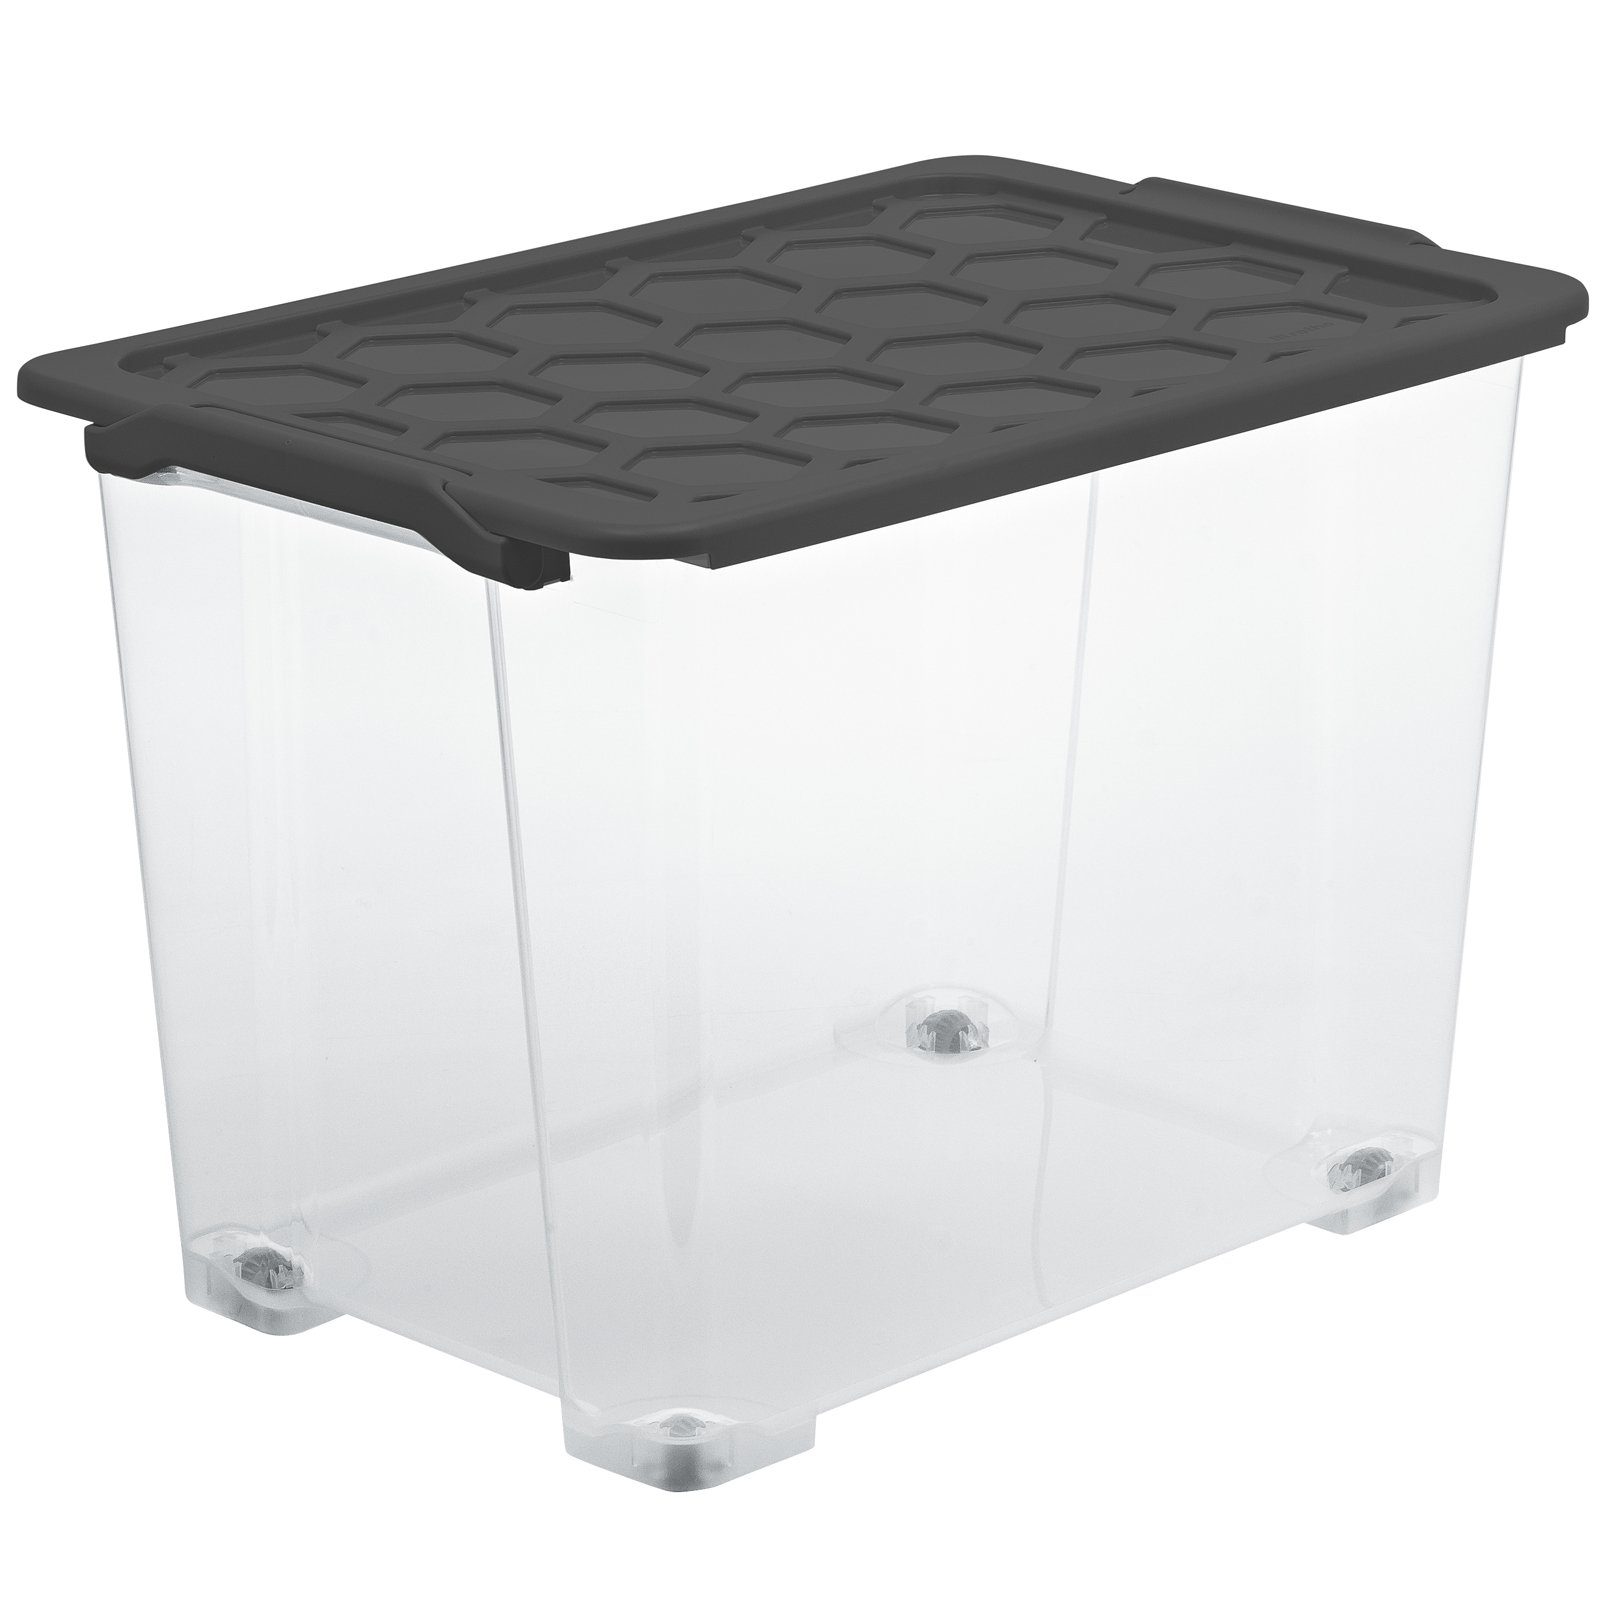 ROTHO Aufbewahrungsbox Evo Safe Keeping Aufbewahrungsbox 65l mit Deckel und Rädern, lebensmittelechter Kunststoff (PP) BPA-frei